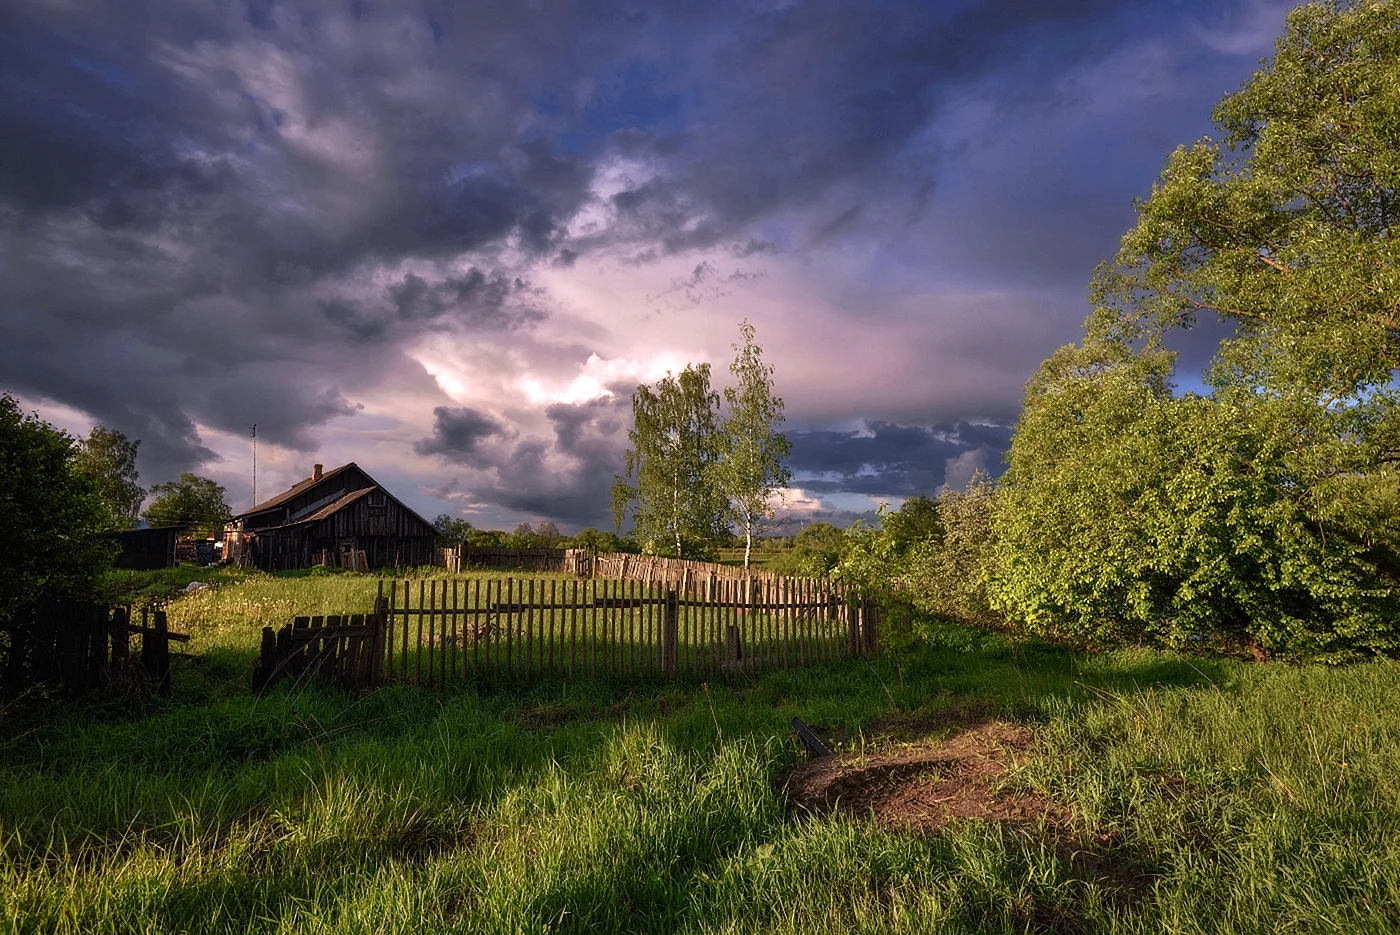 Фотопейзажи белорусских деревень